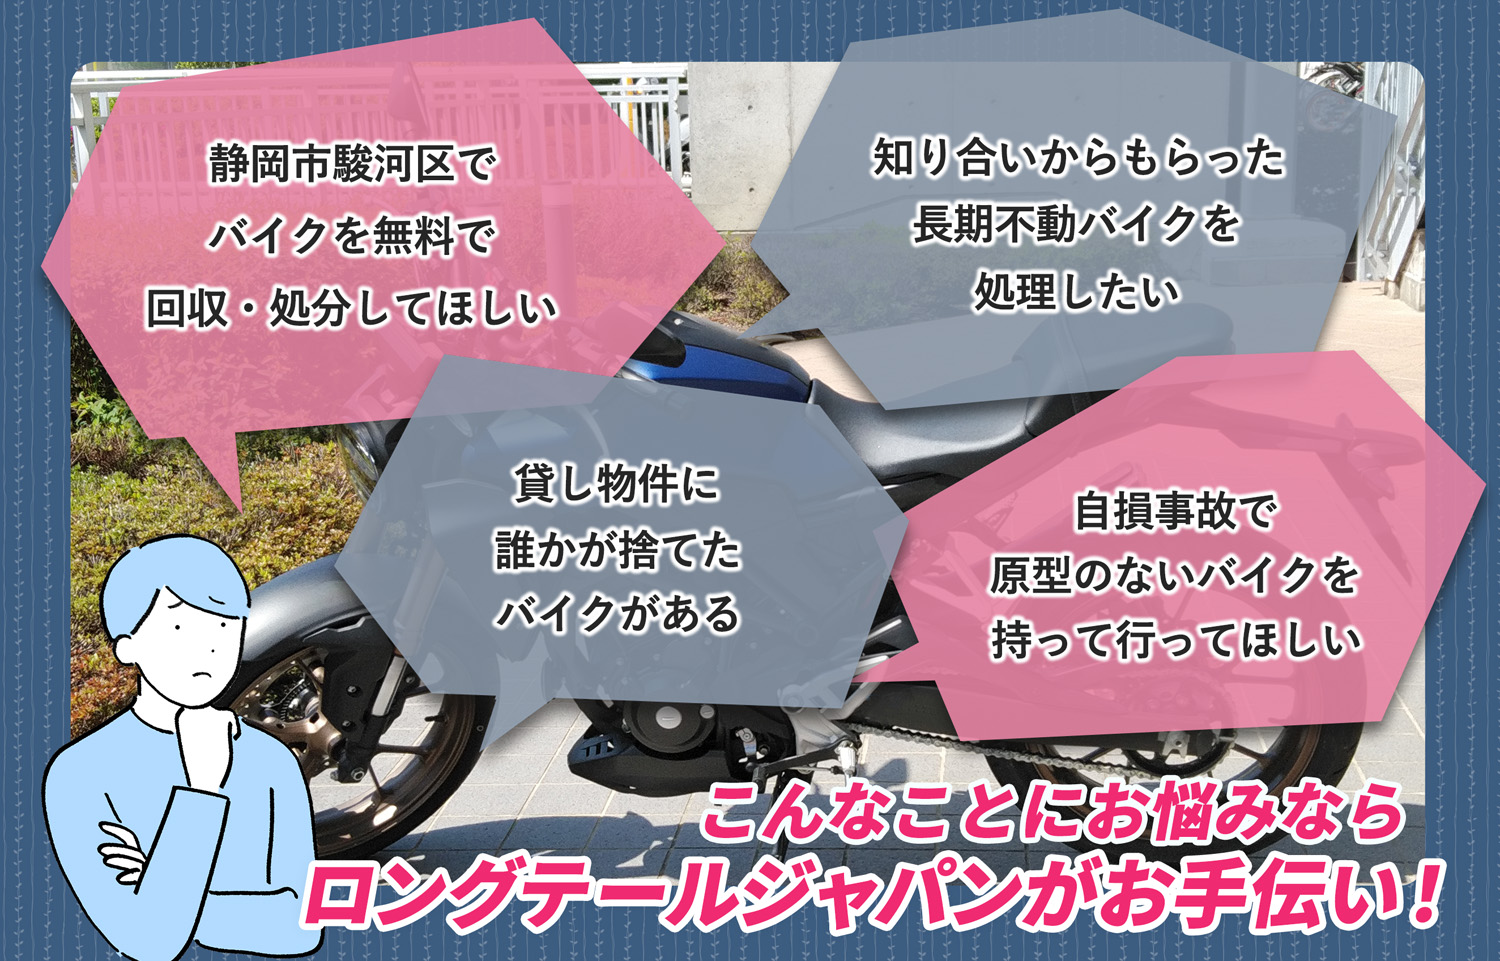 静岡市駿河区でこんなバイクの処分にお困りでしたらバイク無料回収処分隊がお手伝いいたします。